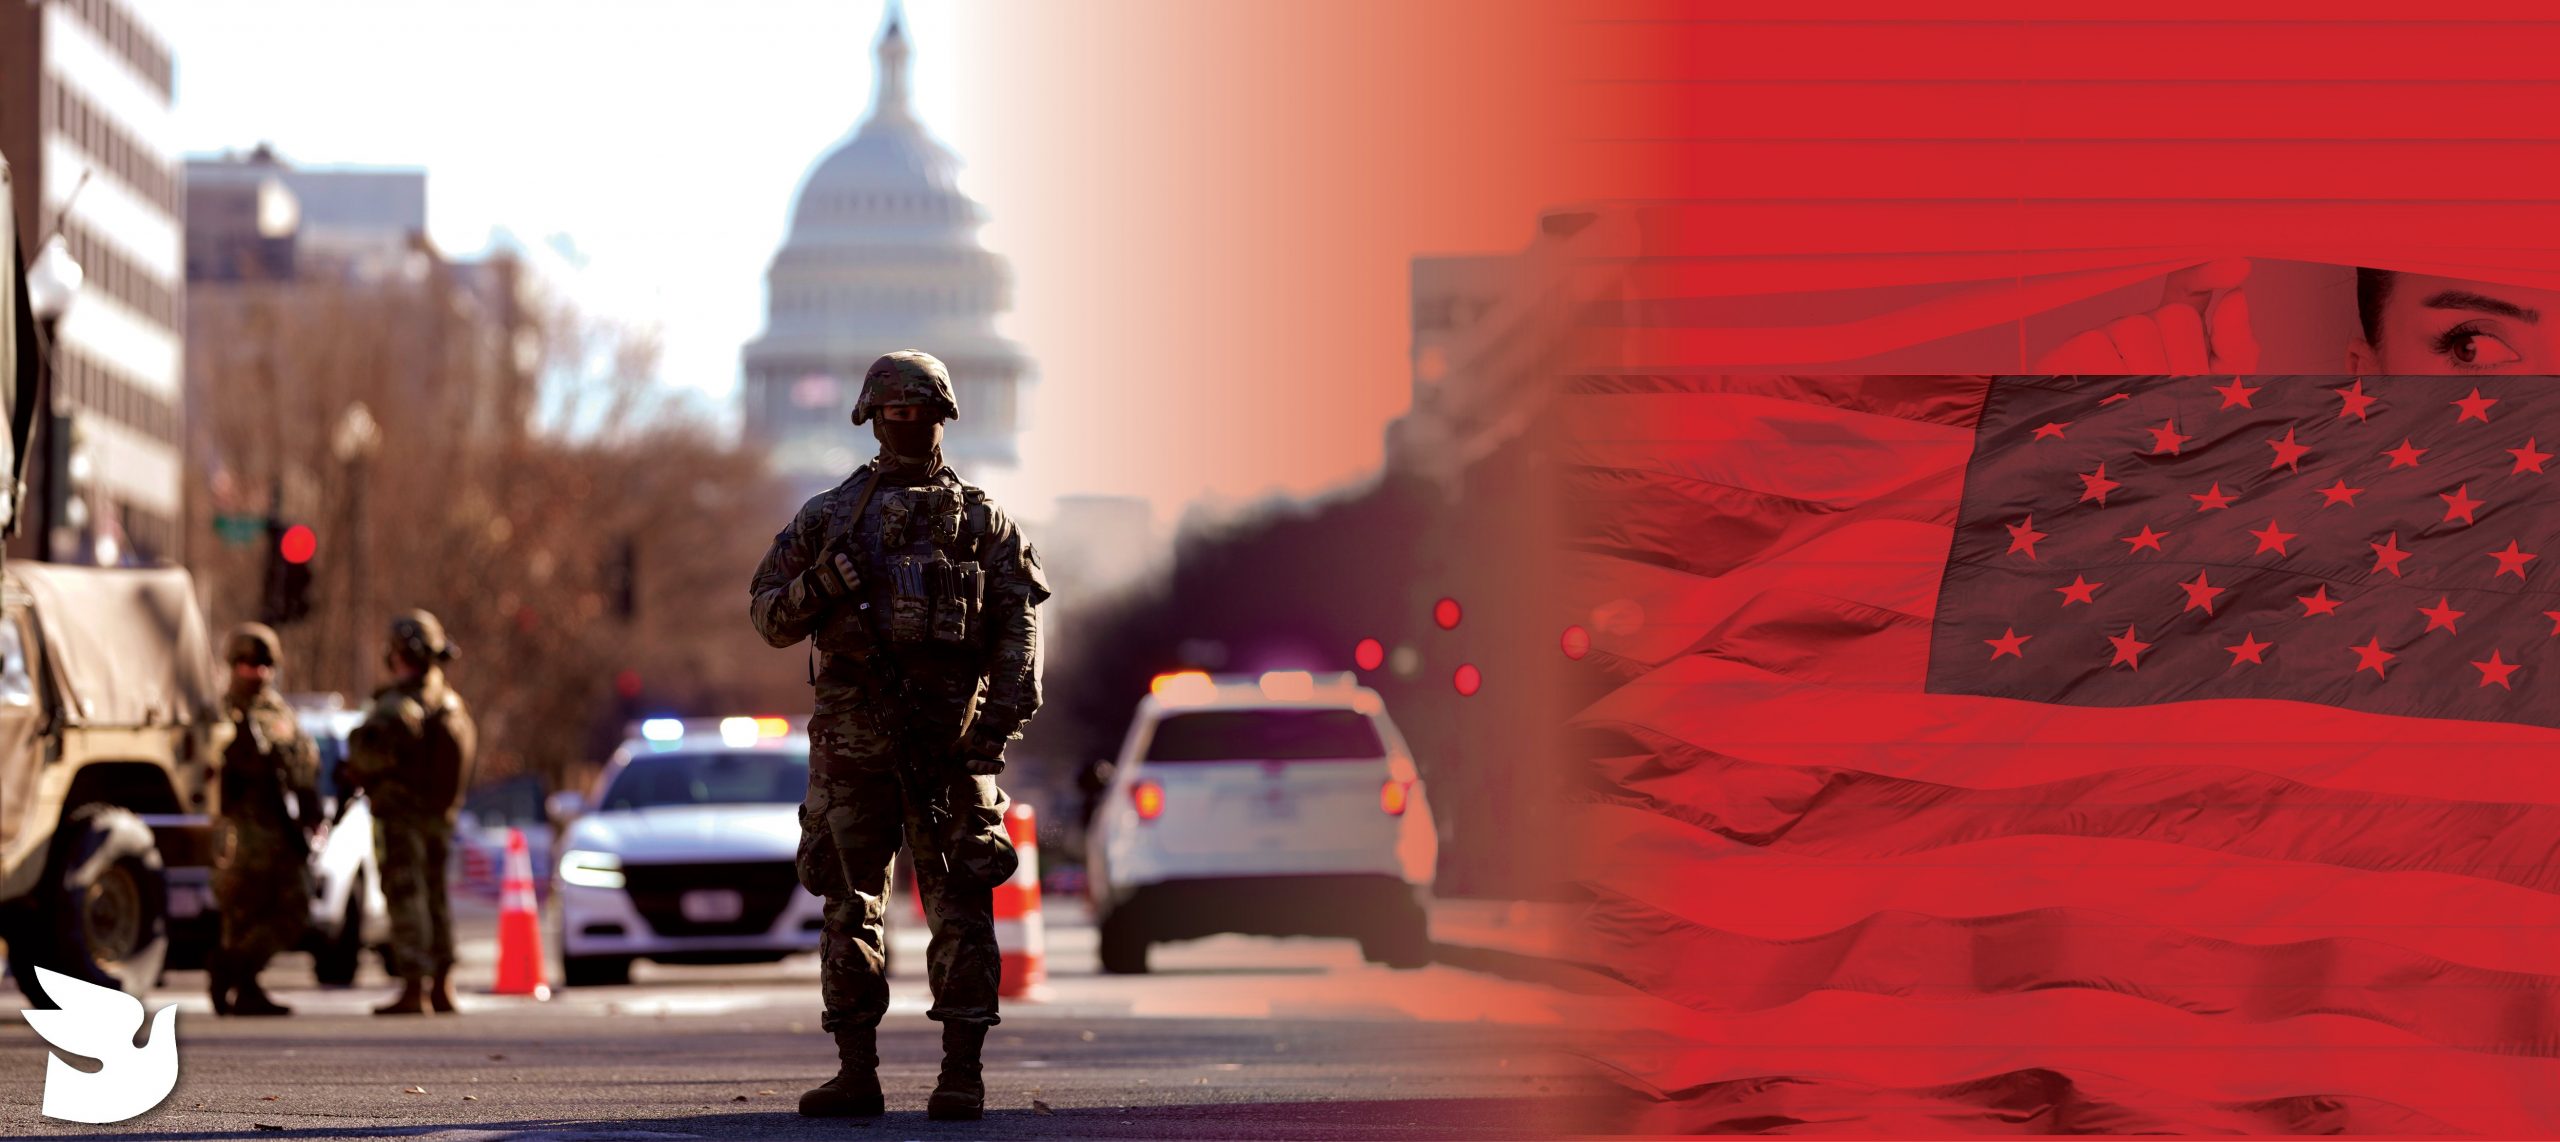 Αργεί η ομαλοποίηση στην Ουάσιγκτον και τις ΗΠΑ – Οι εθνοφύλακες ένοπλοι παραμένουν στους δρόμους